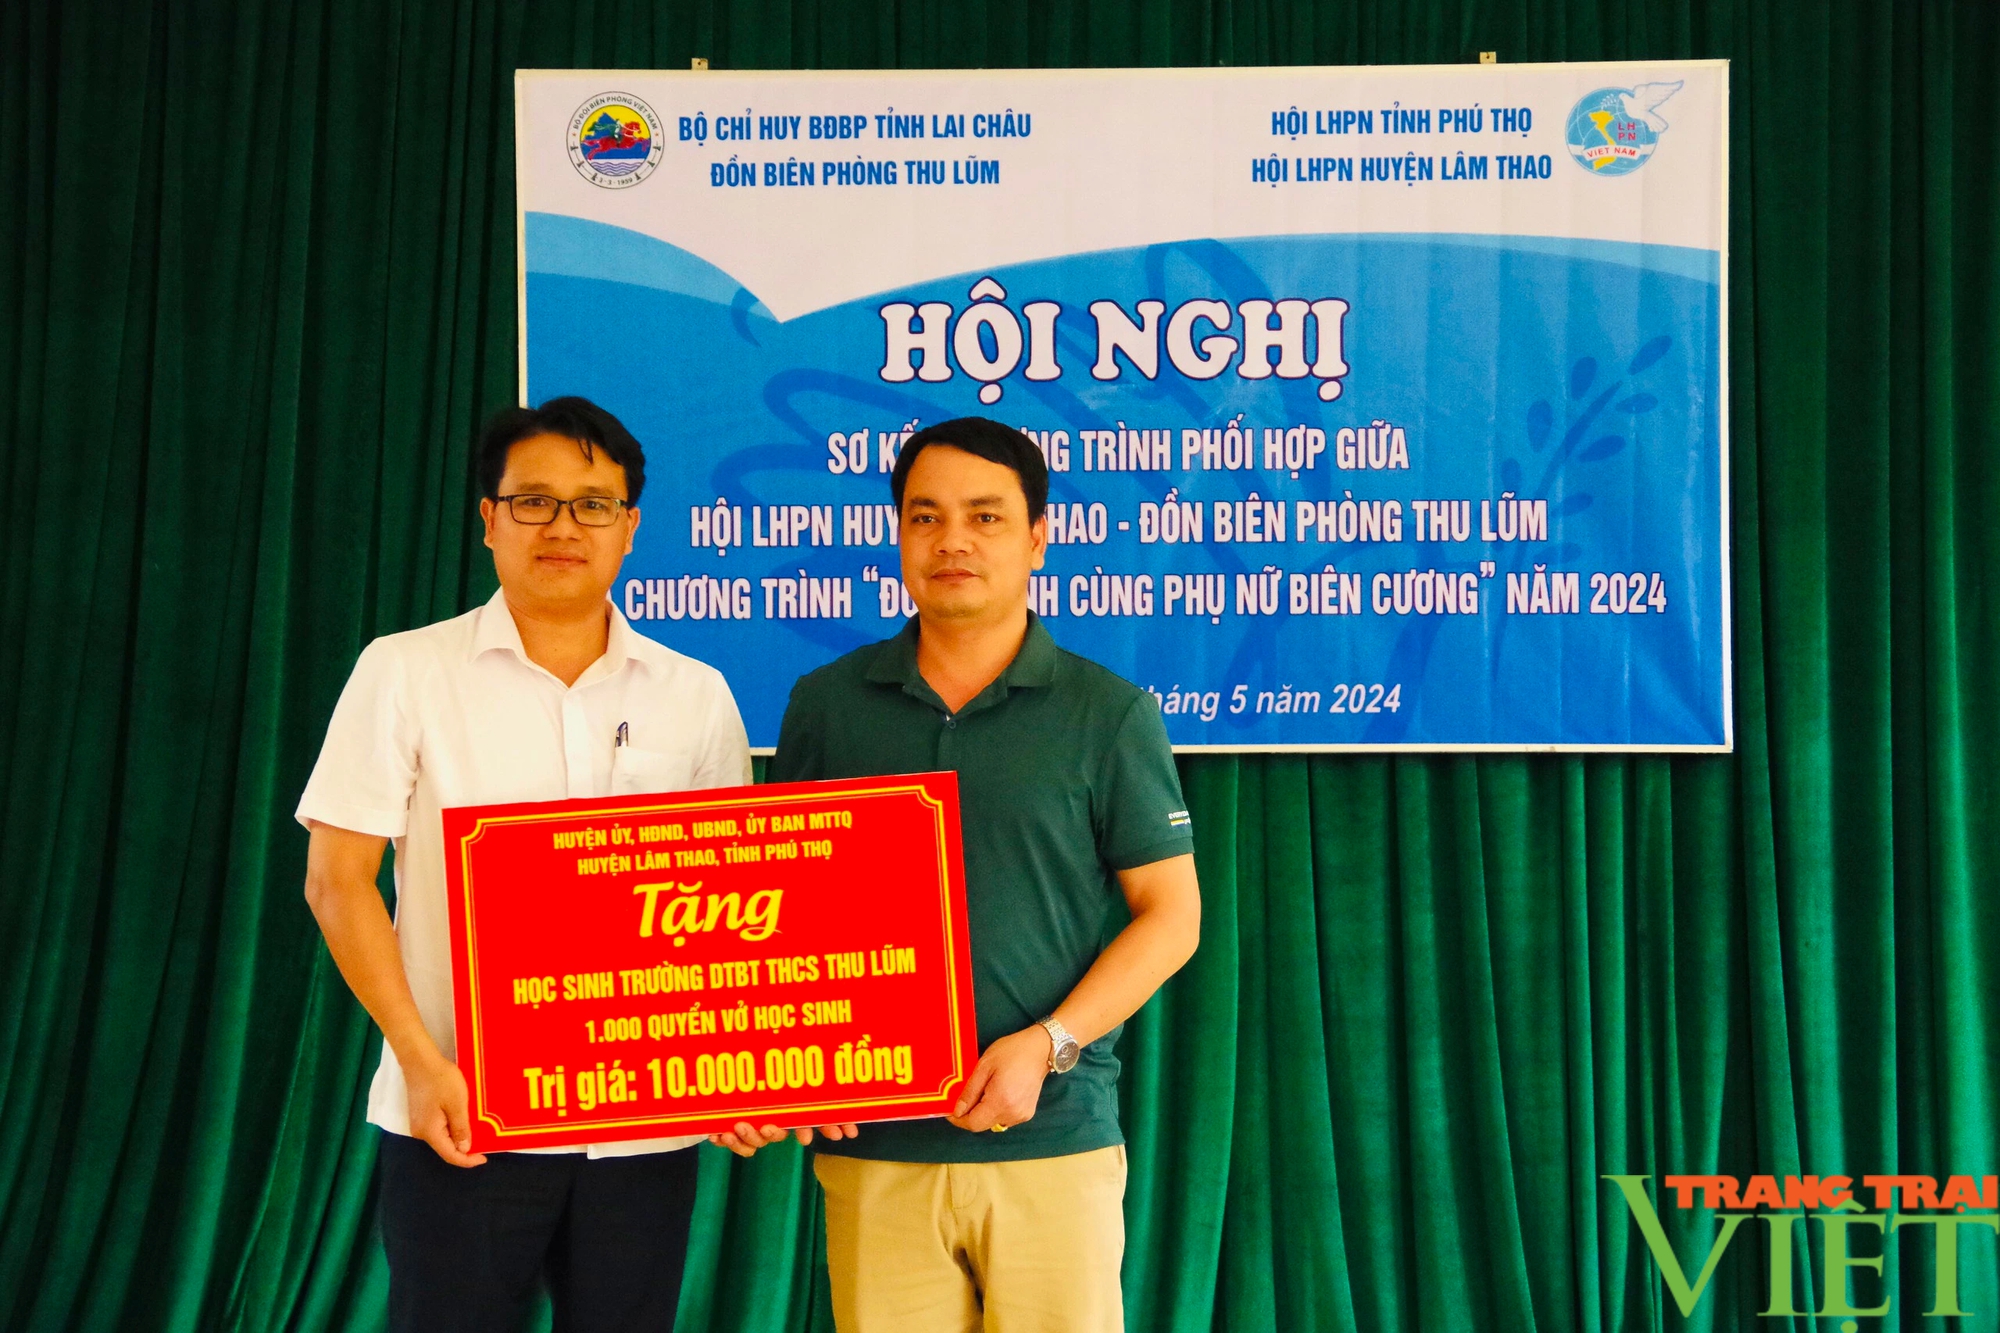 Lai Châu: Sơ kết chương trình phối hợp giữa Đồn Biên phòng Thu Lũm và Hội LHPN huyện Lâm Thao, Phú Thọ- Ảnh 10.